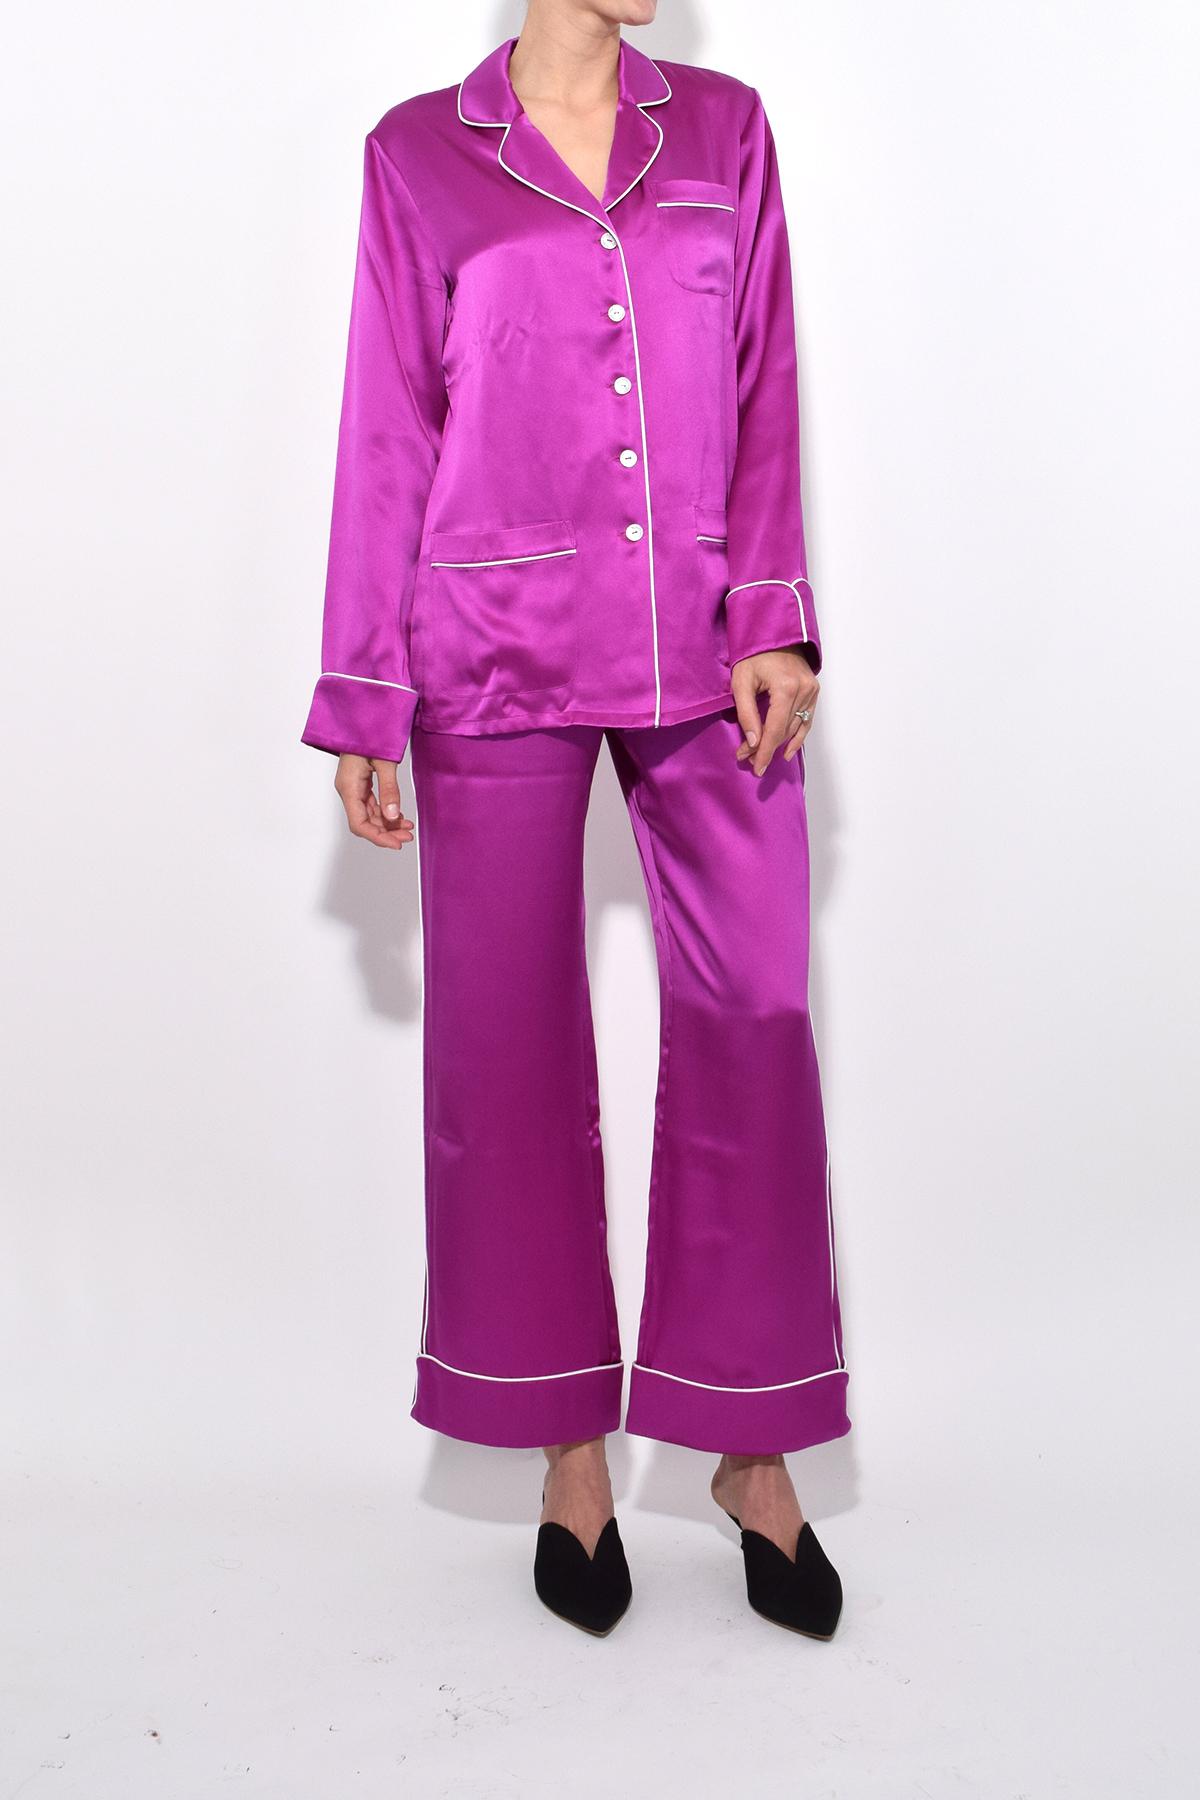 Olivia Von Halle Silk Coco Pajama Set In Magenta - Lyst